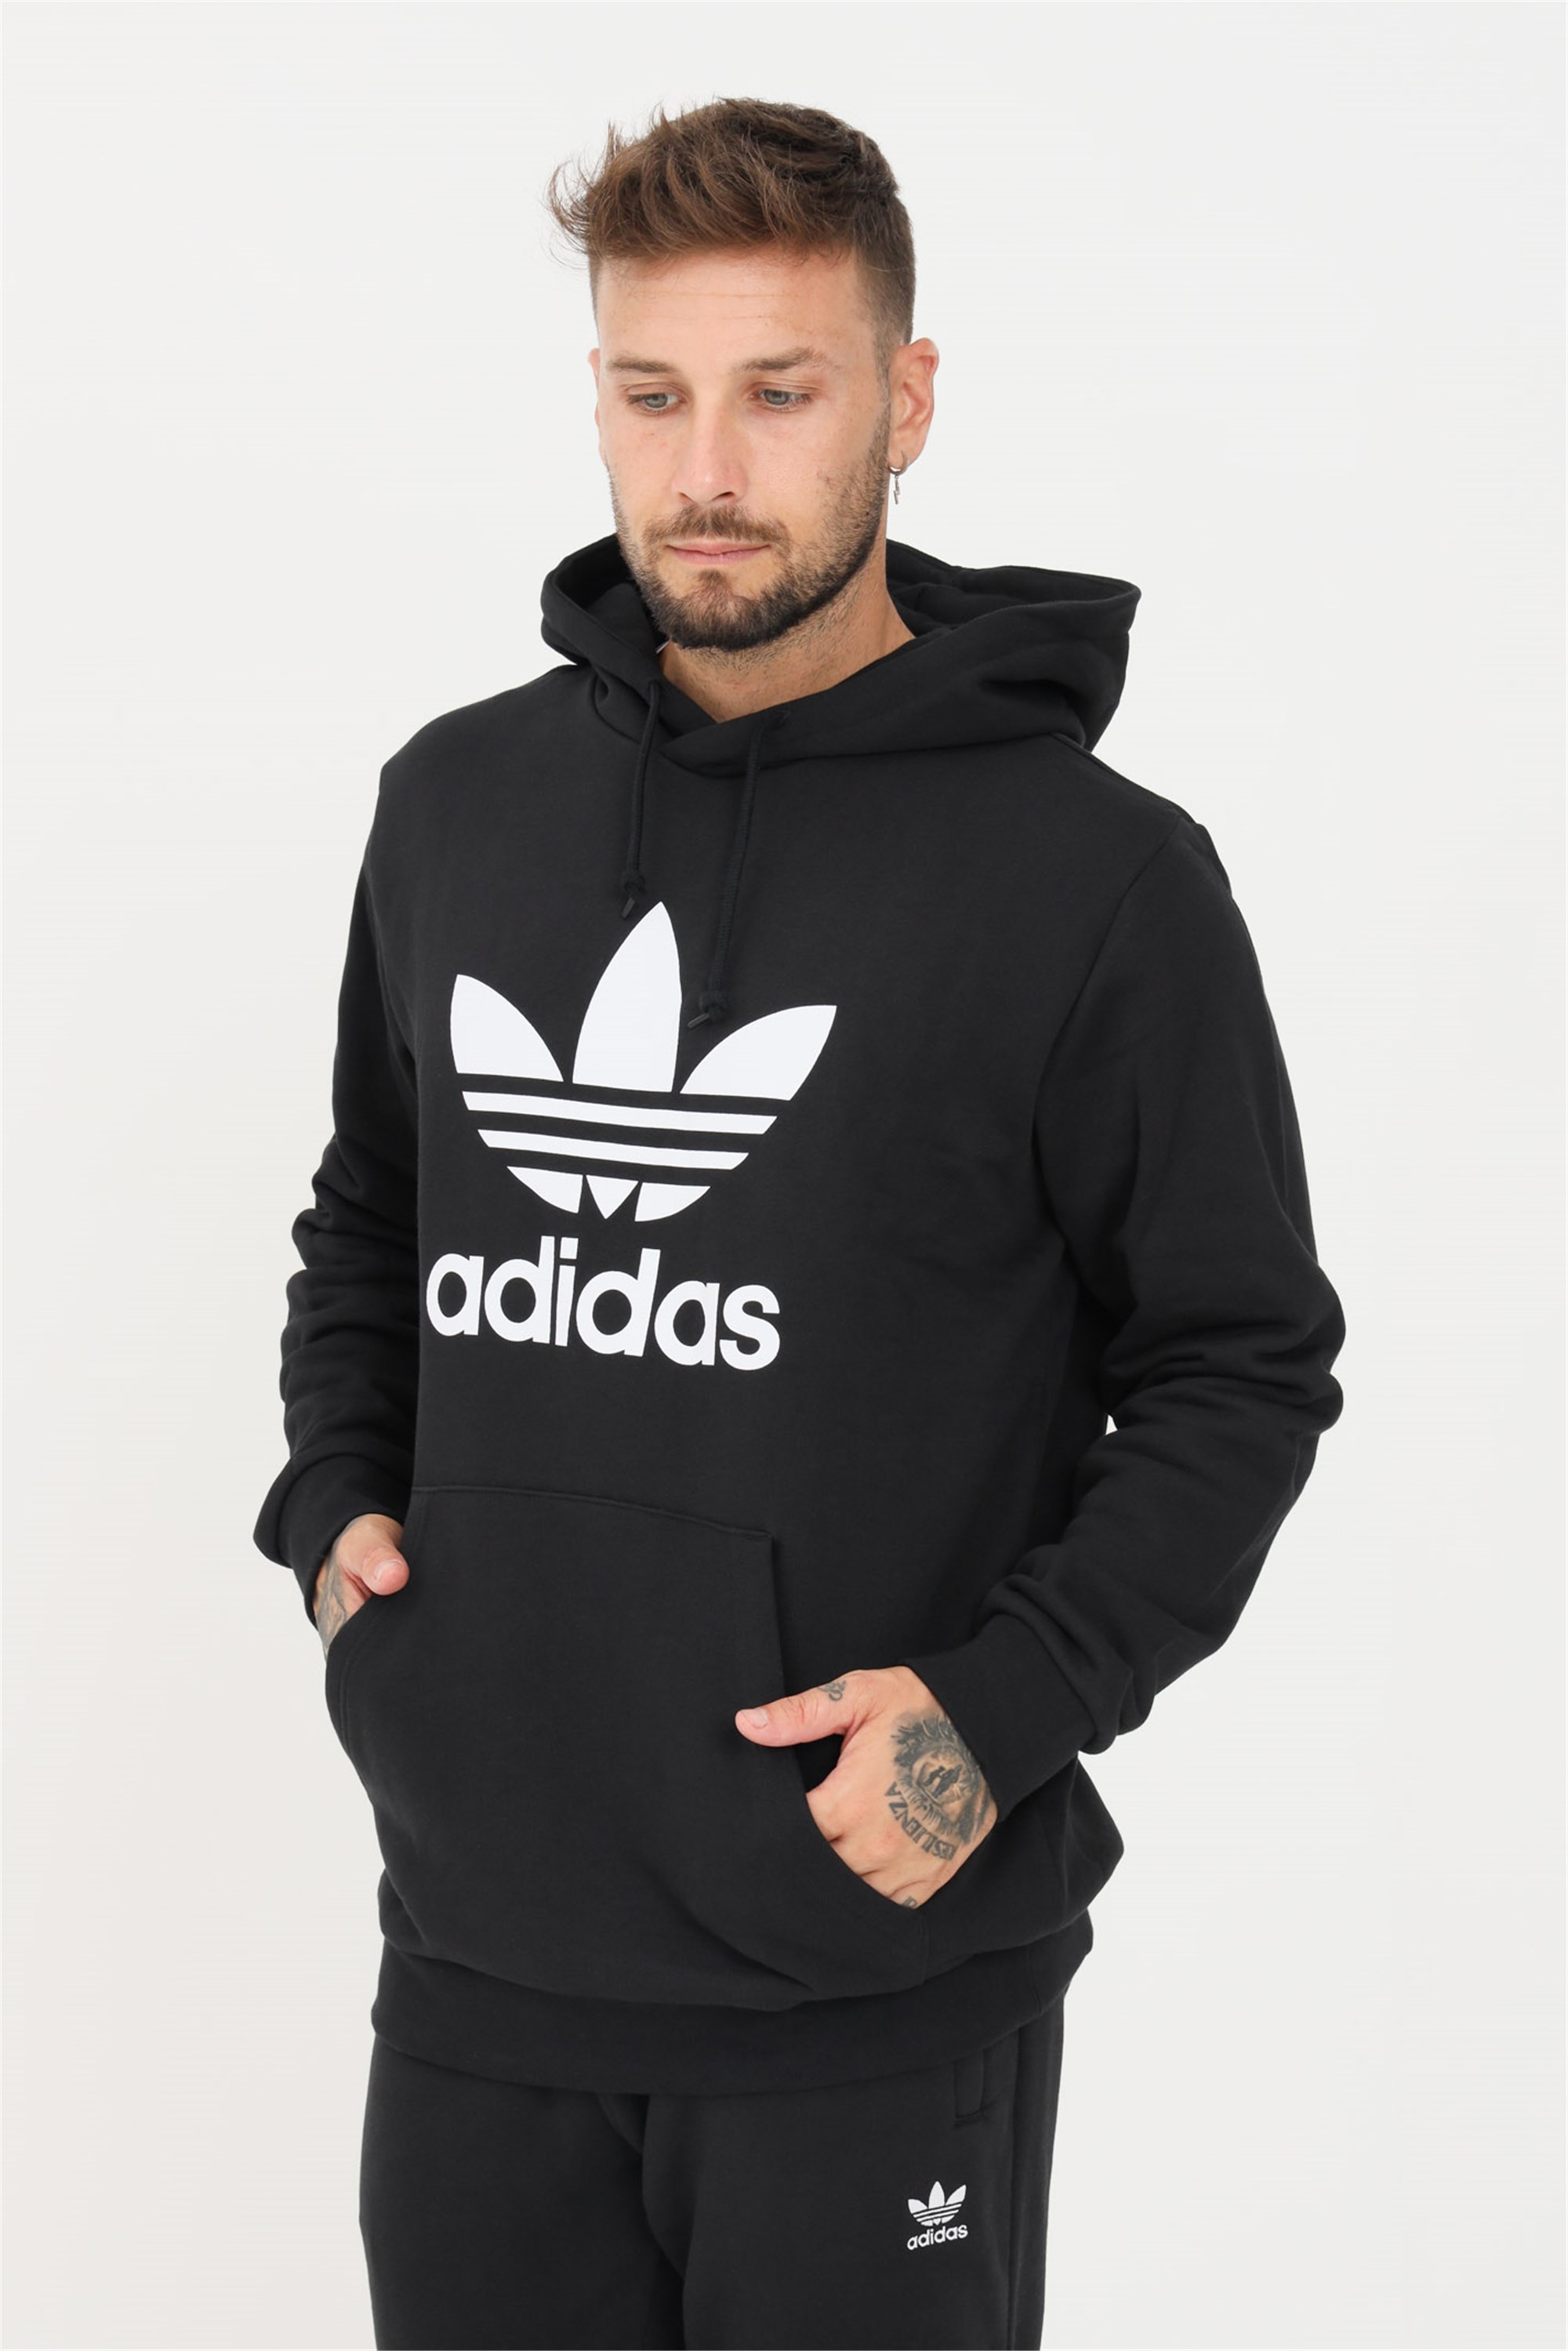 Adidas Originals Trefoil Kapuzenpullover 2XL Black / White günstig online kaufen